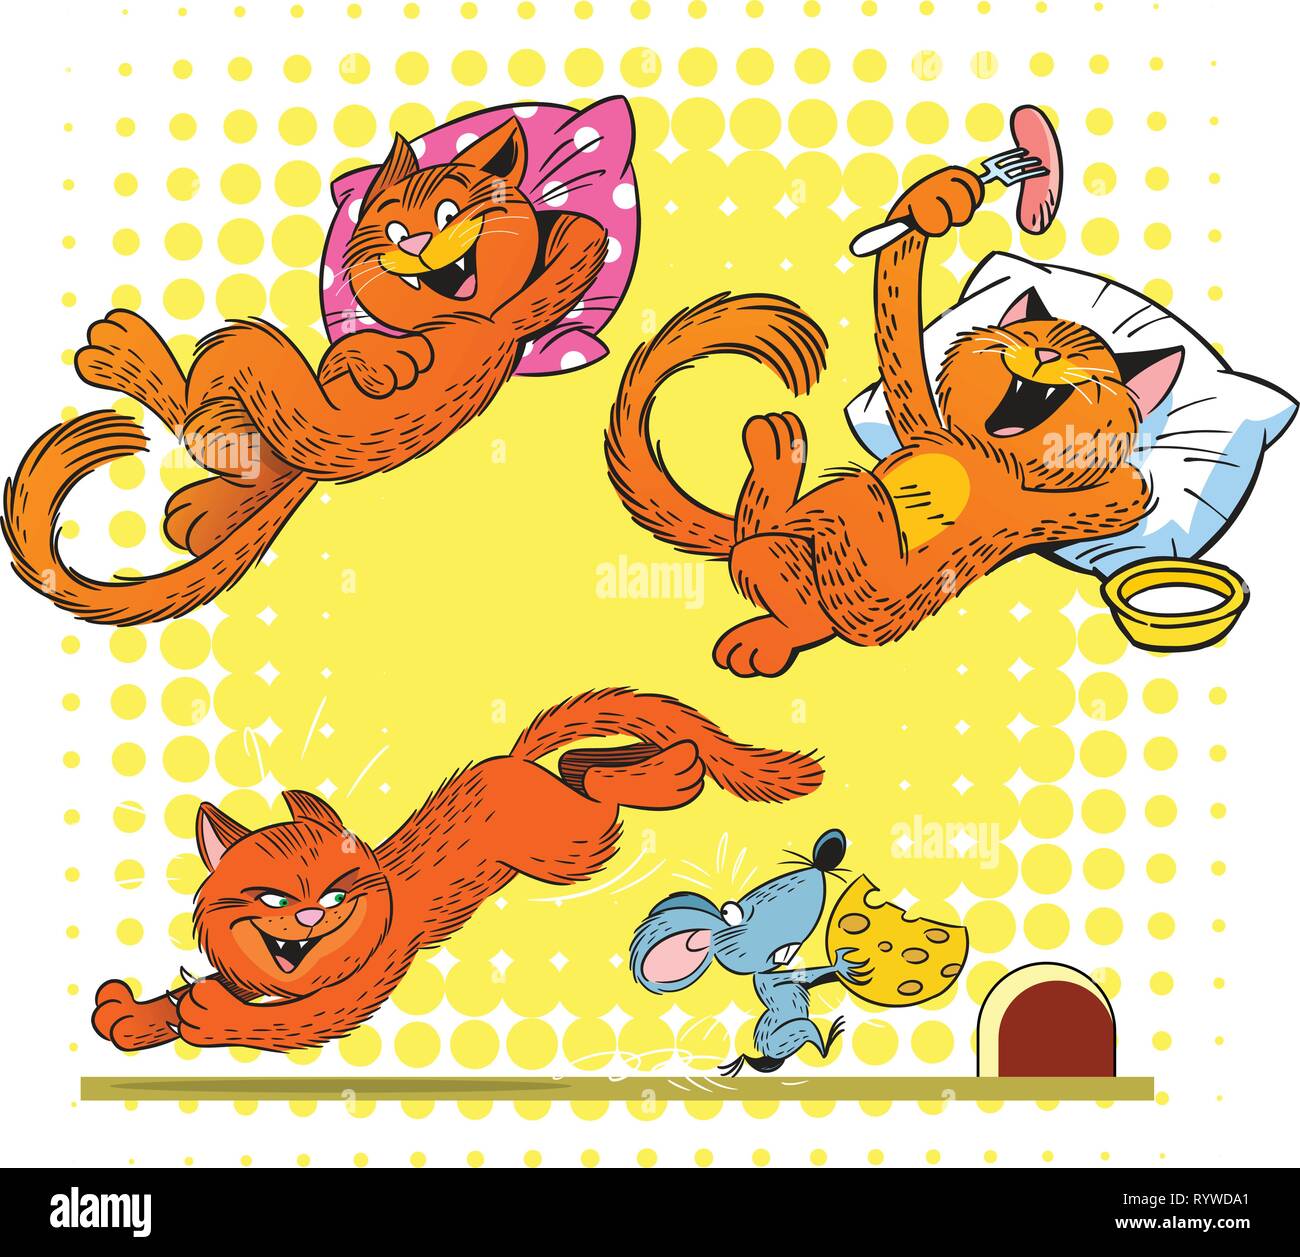 L'illustration montre un chat roux dans diverses poses et situations. Illustration faite sur des calques distincts. Illustration de Vecteur